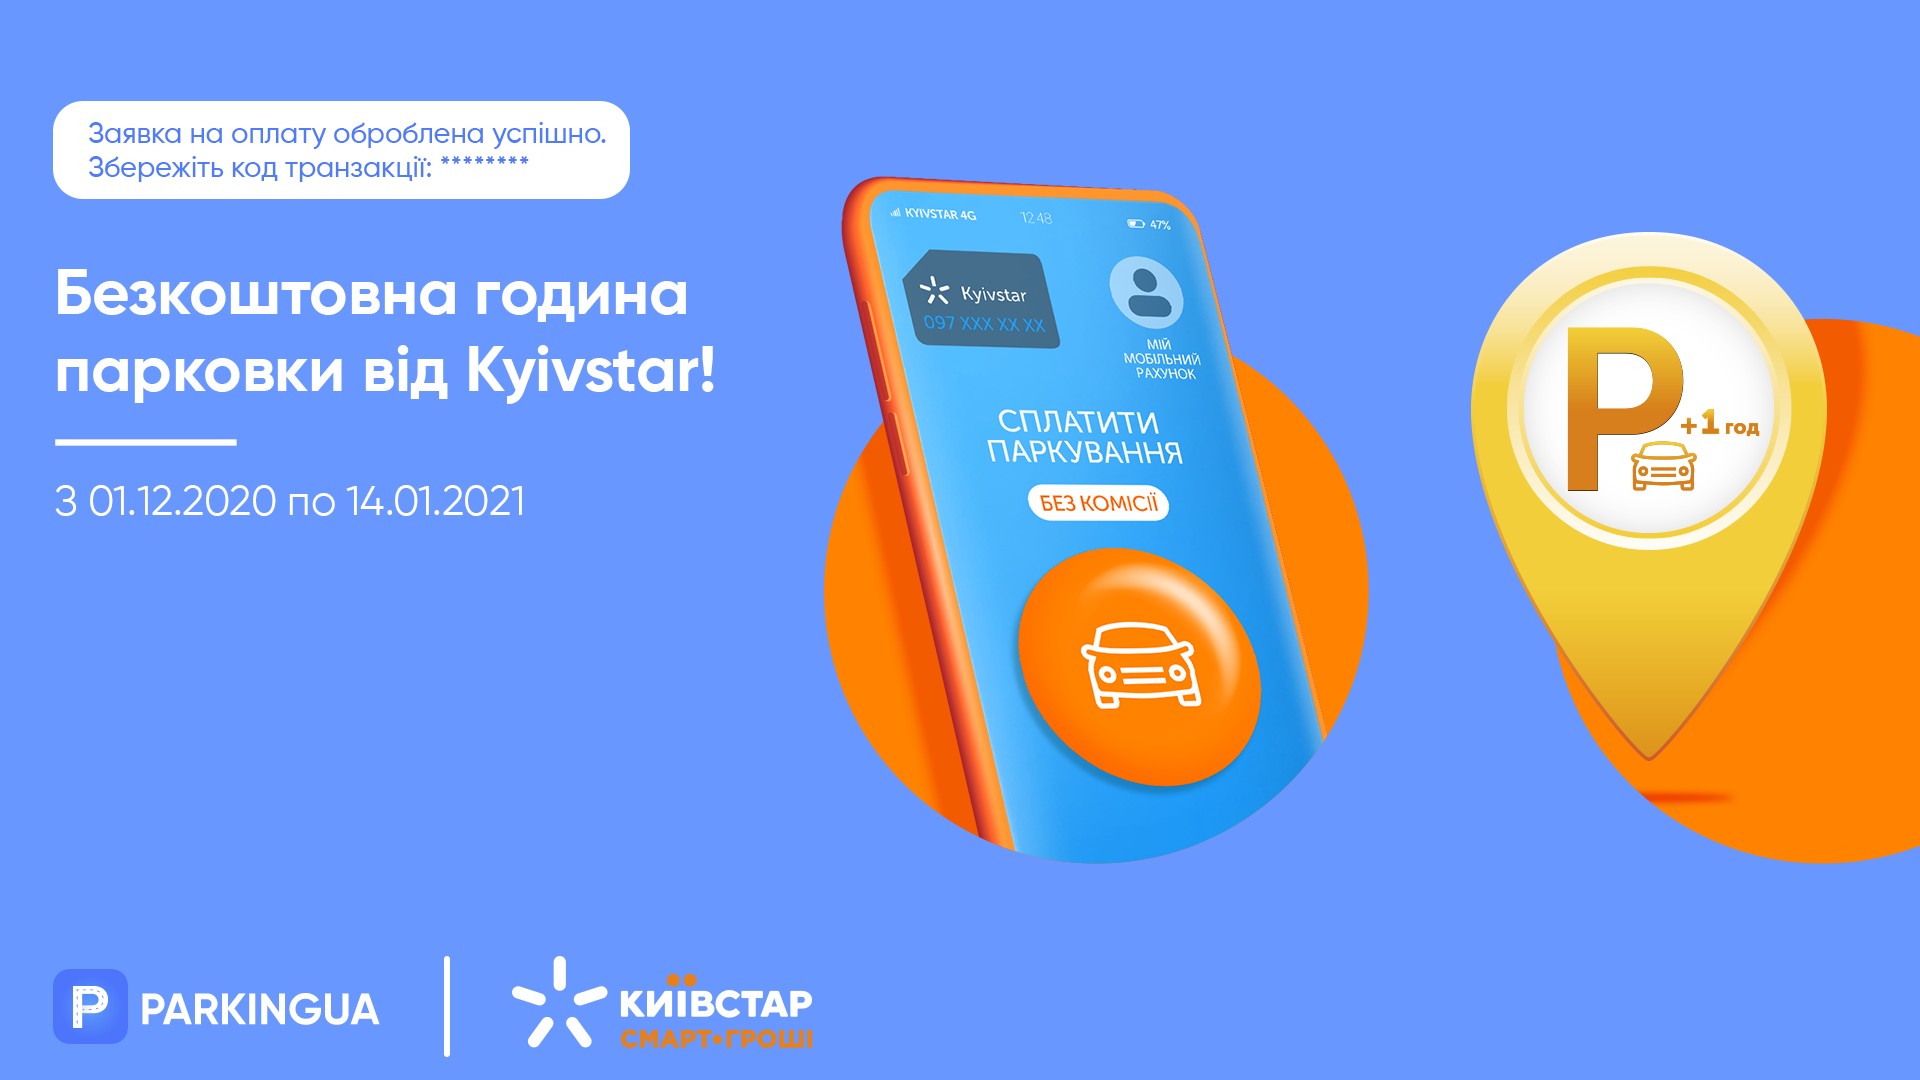 Платите за парковку в Parking UA мобильным балансом Kyivstar и получайте час парковки в подарок